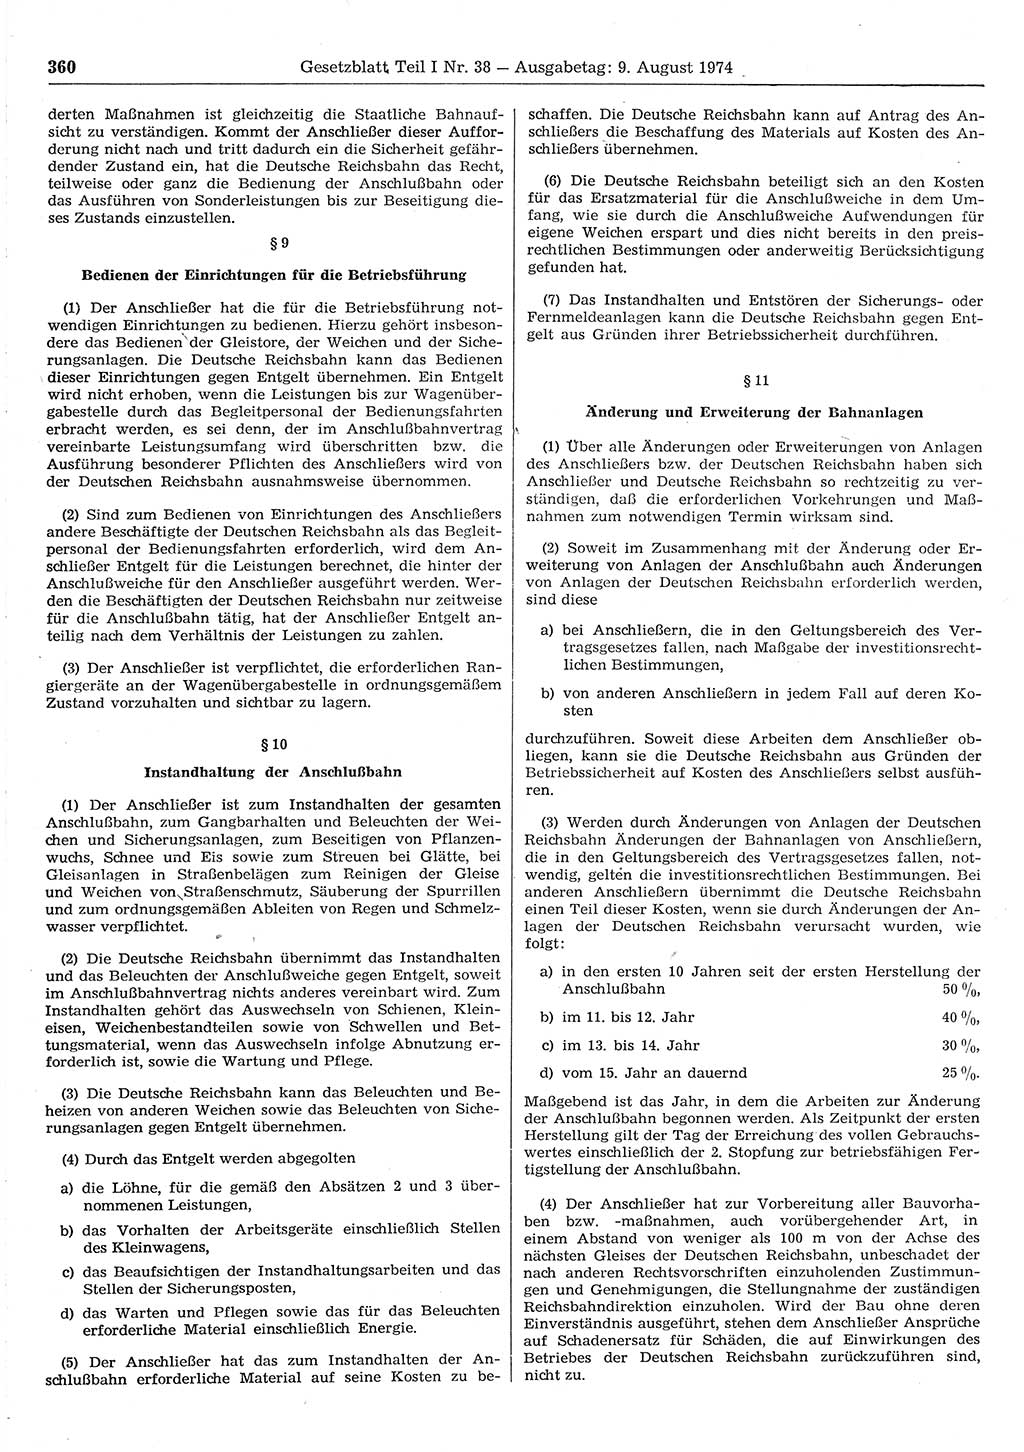 Gesetzblatt (GBl.) der Deutschen Demokratischen Republik (DDR) Teil Ⅰ 1974, Seite 360 (GBl. DDR Ⅰ 1974, S. 360)